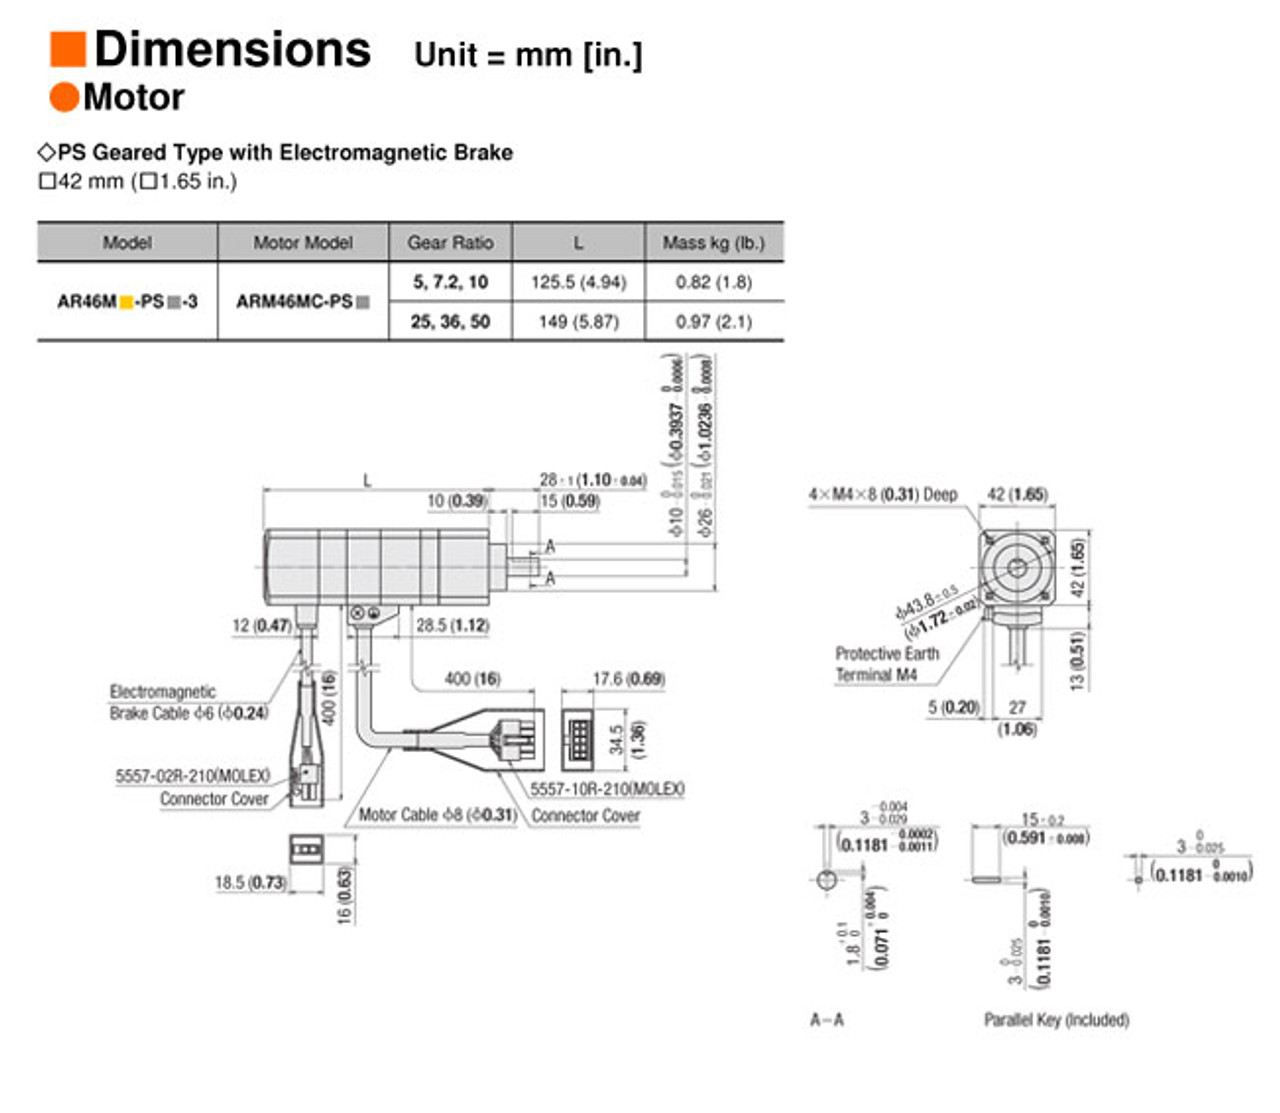 ARM46MC-PS5 - Dimensions